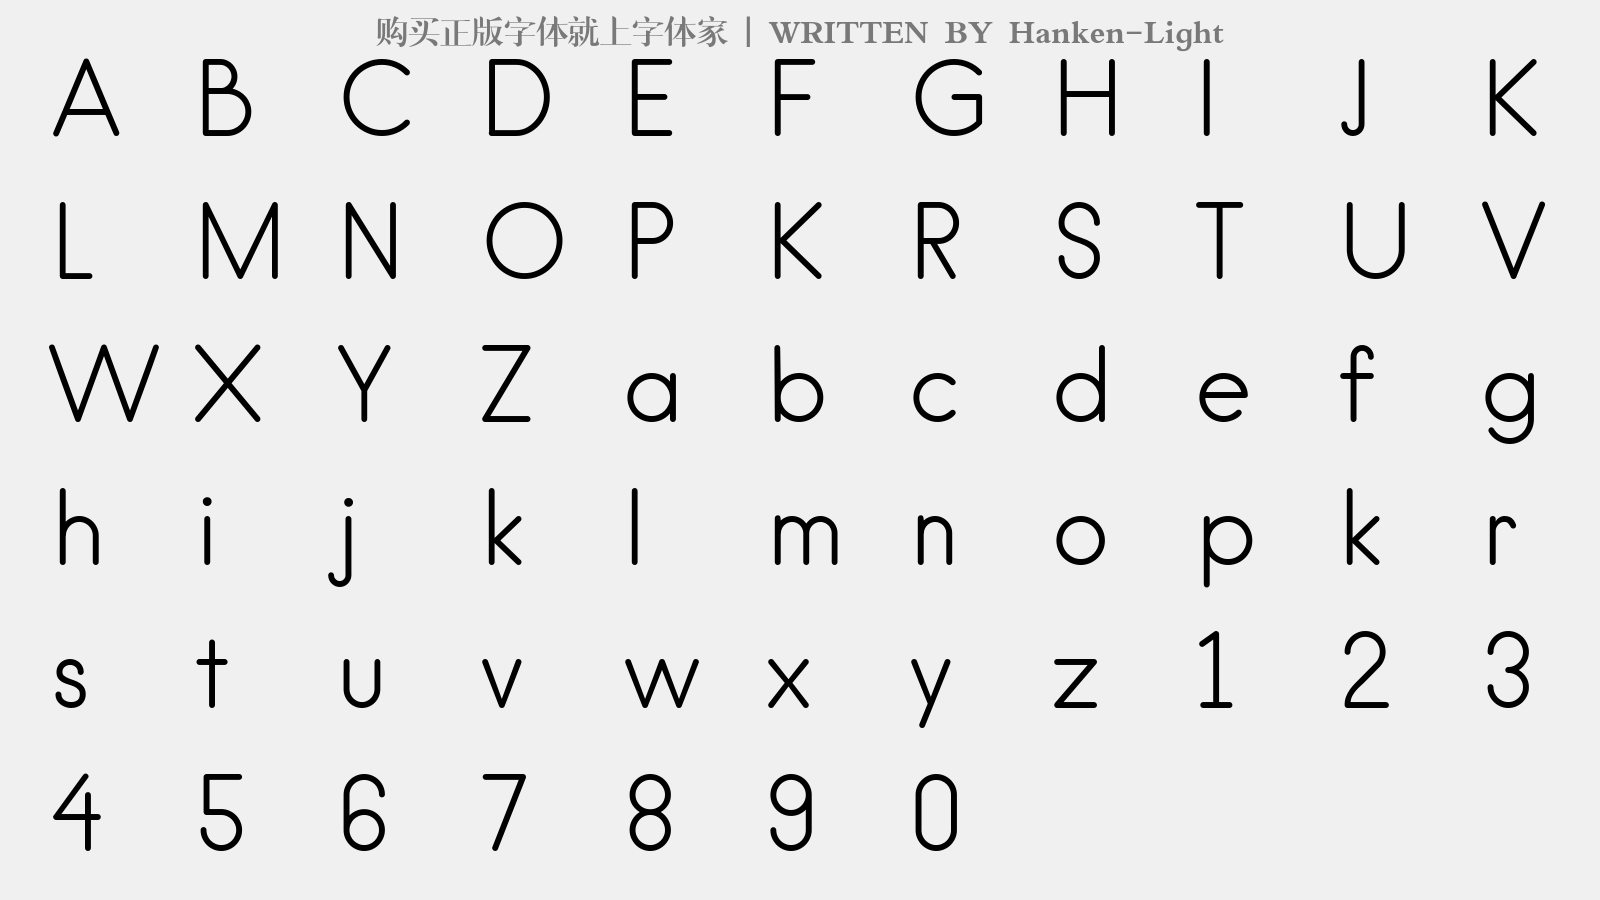 Hanken-Light - 大写字母/小写字母/数字